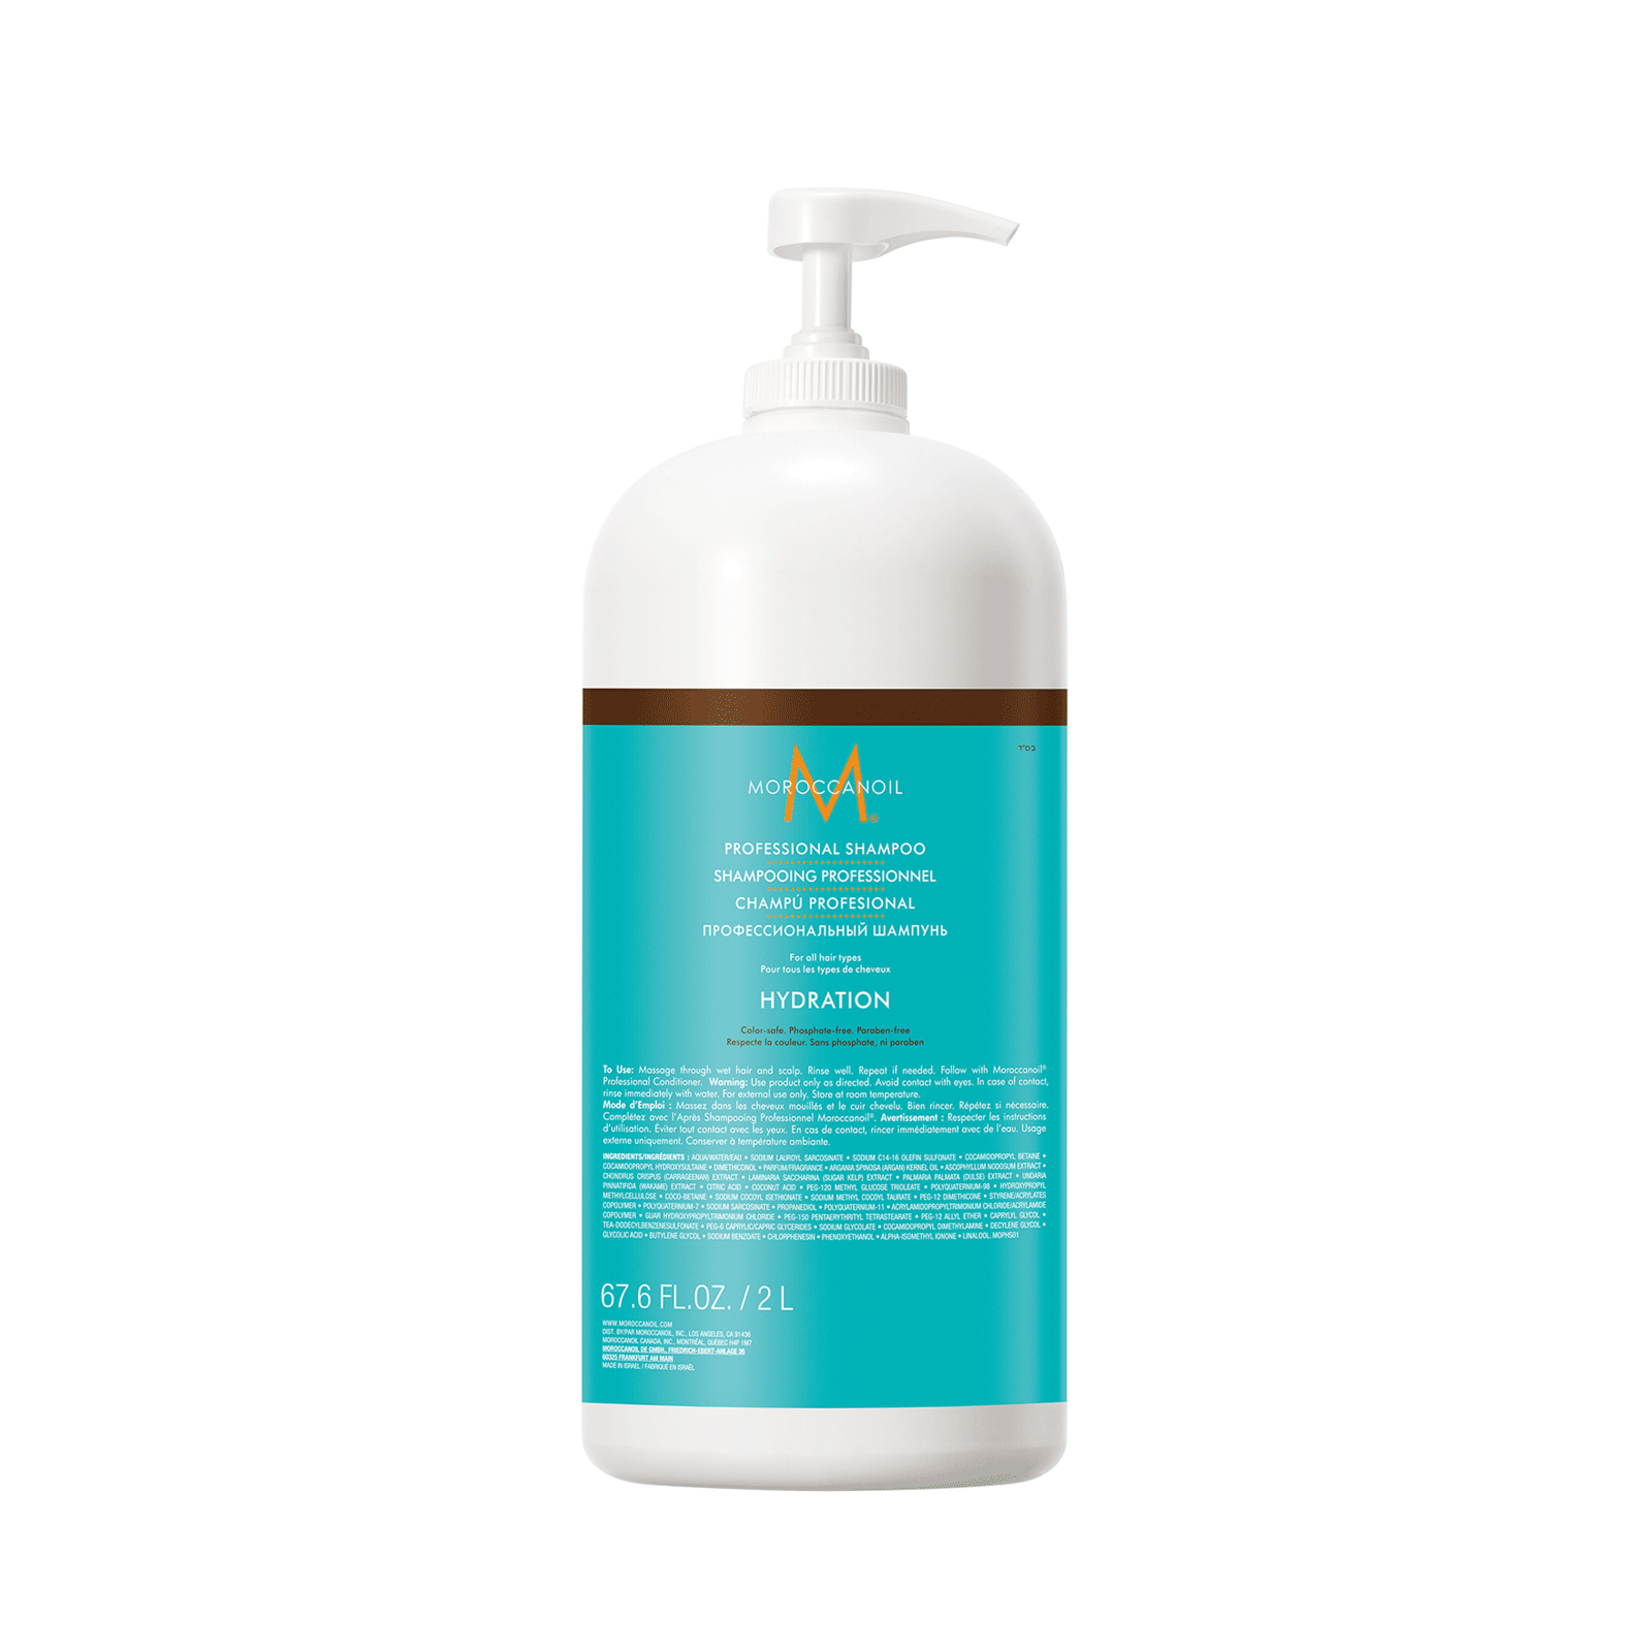 MOROCCANOIL MOROCCANOIL Hydration Professional Shampoo 2 Litre